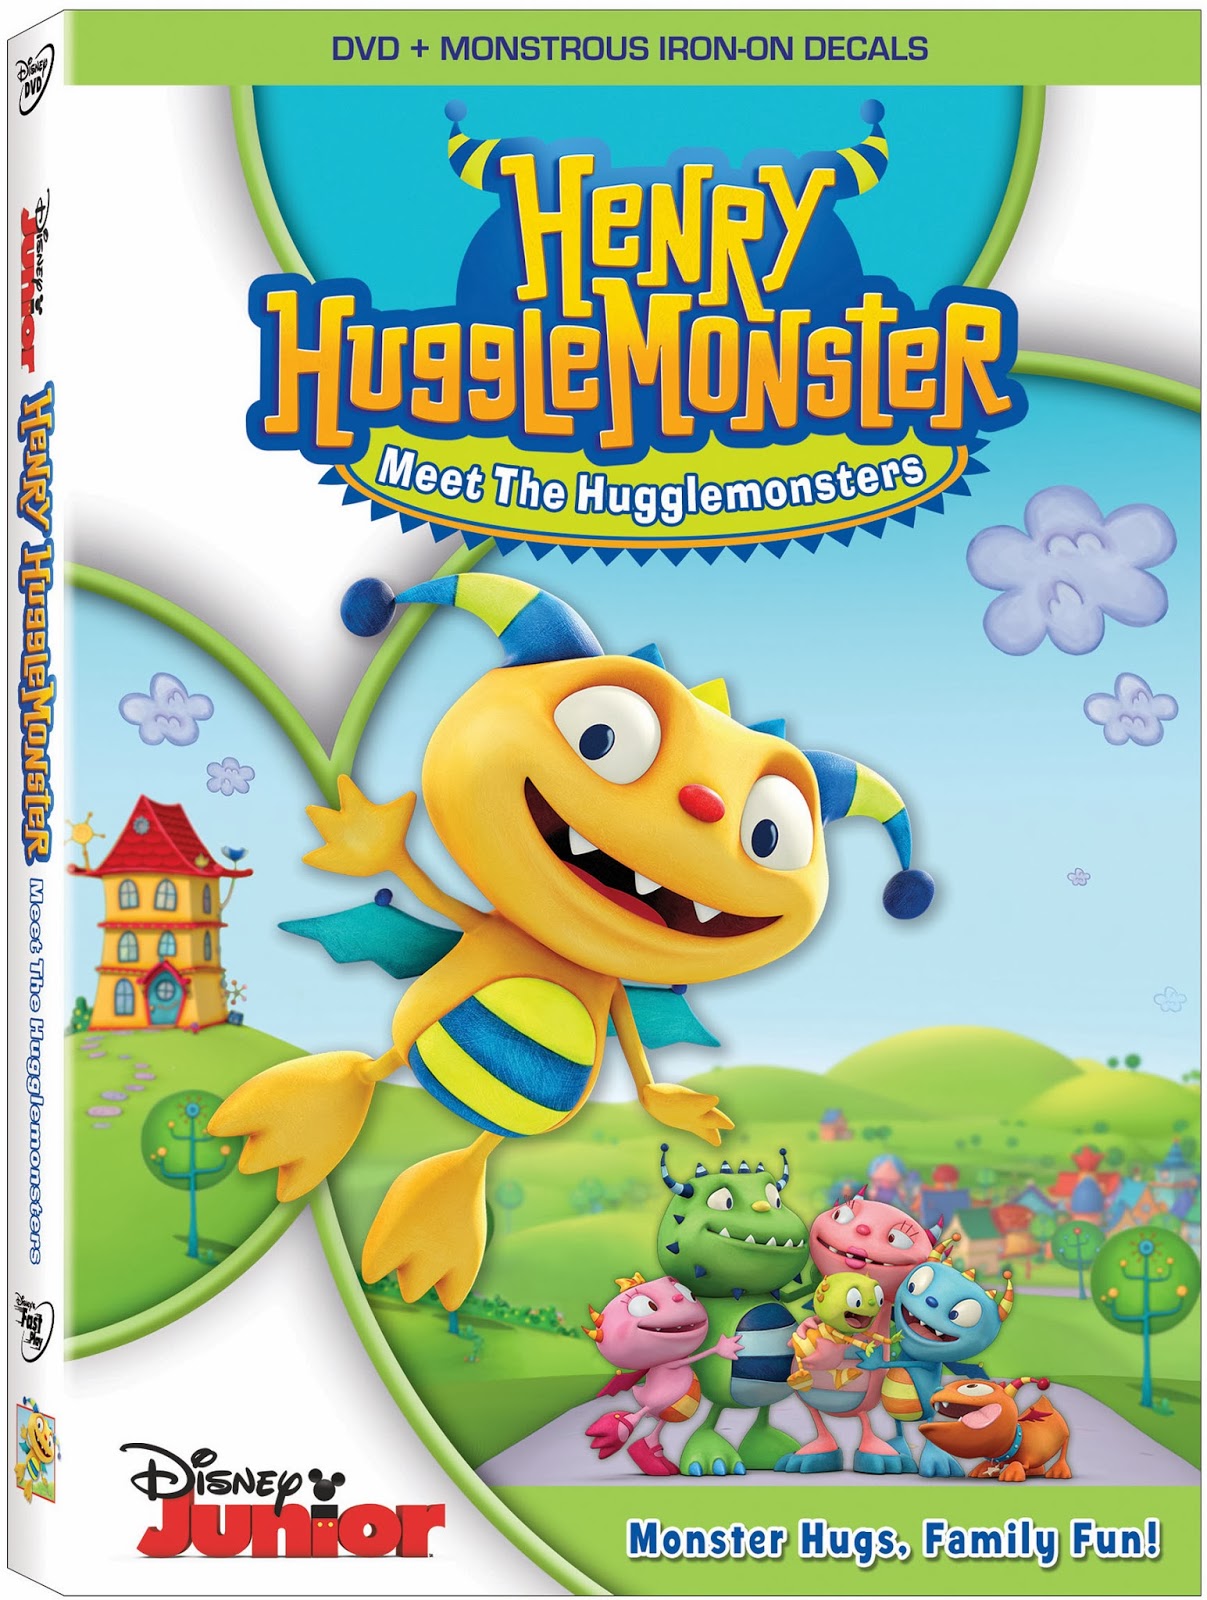 Henry Hugglemonster DVD